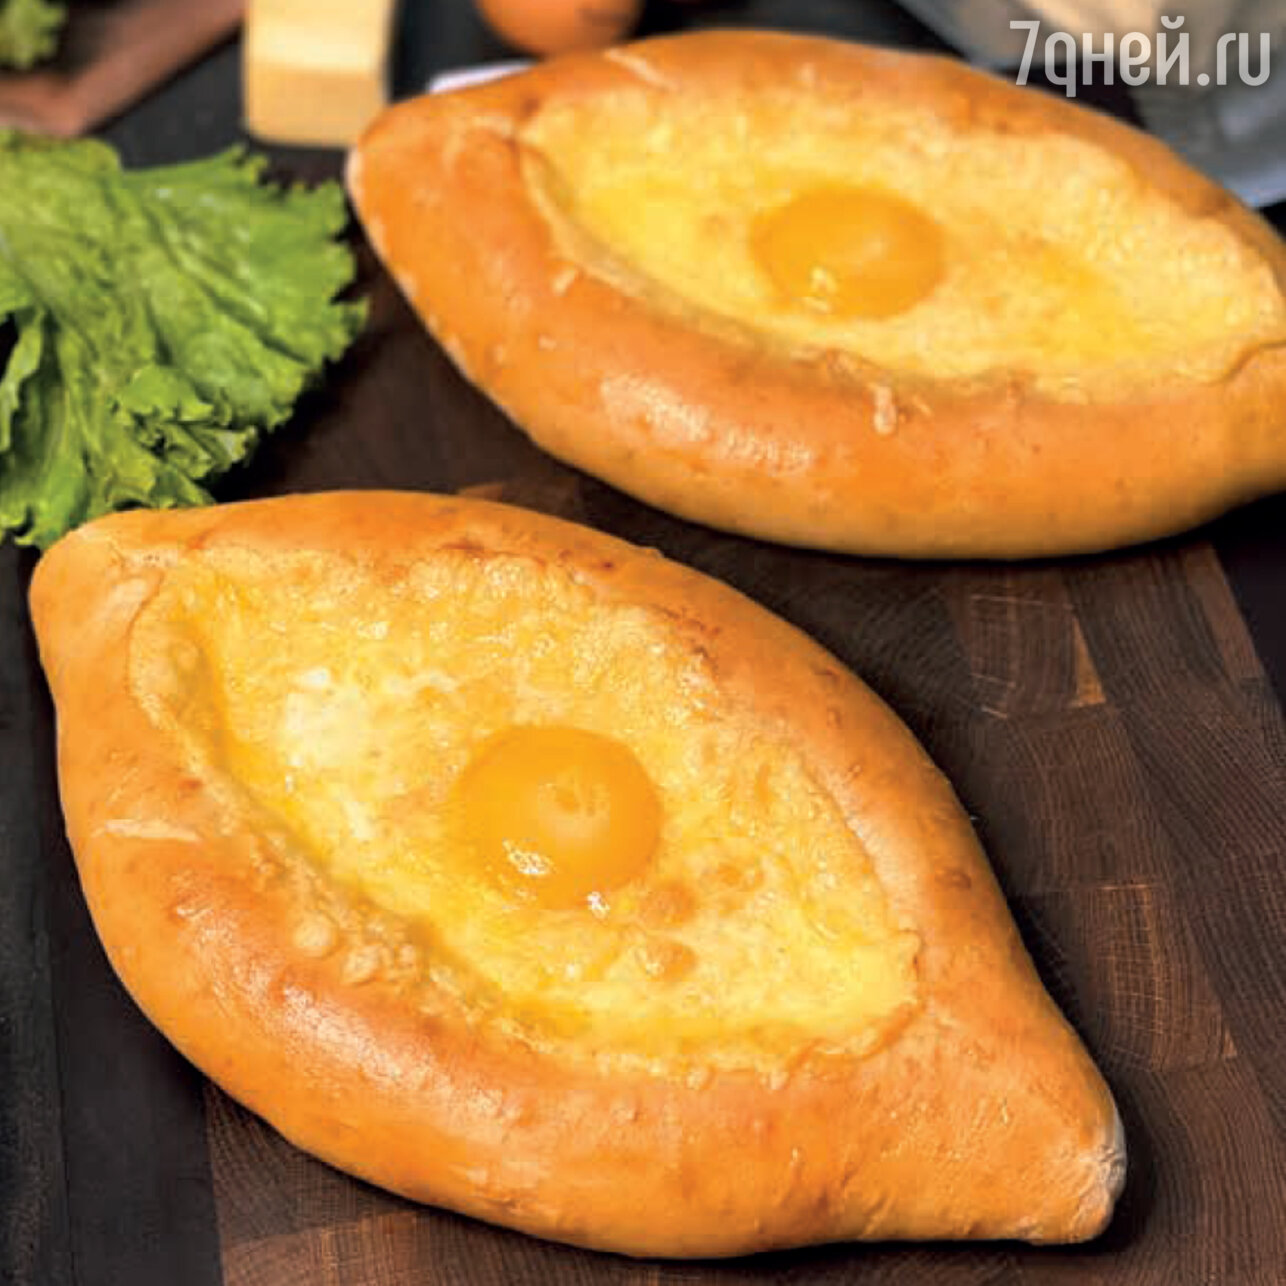 Хачапури по-аджарски с сыром и яйцом, пошаговый рецепт с фото